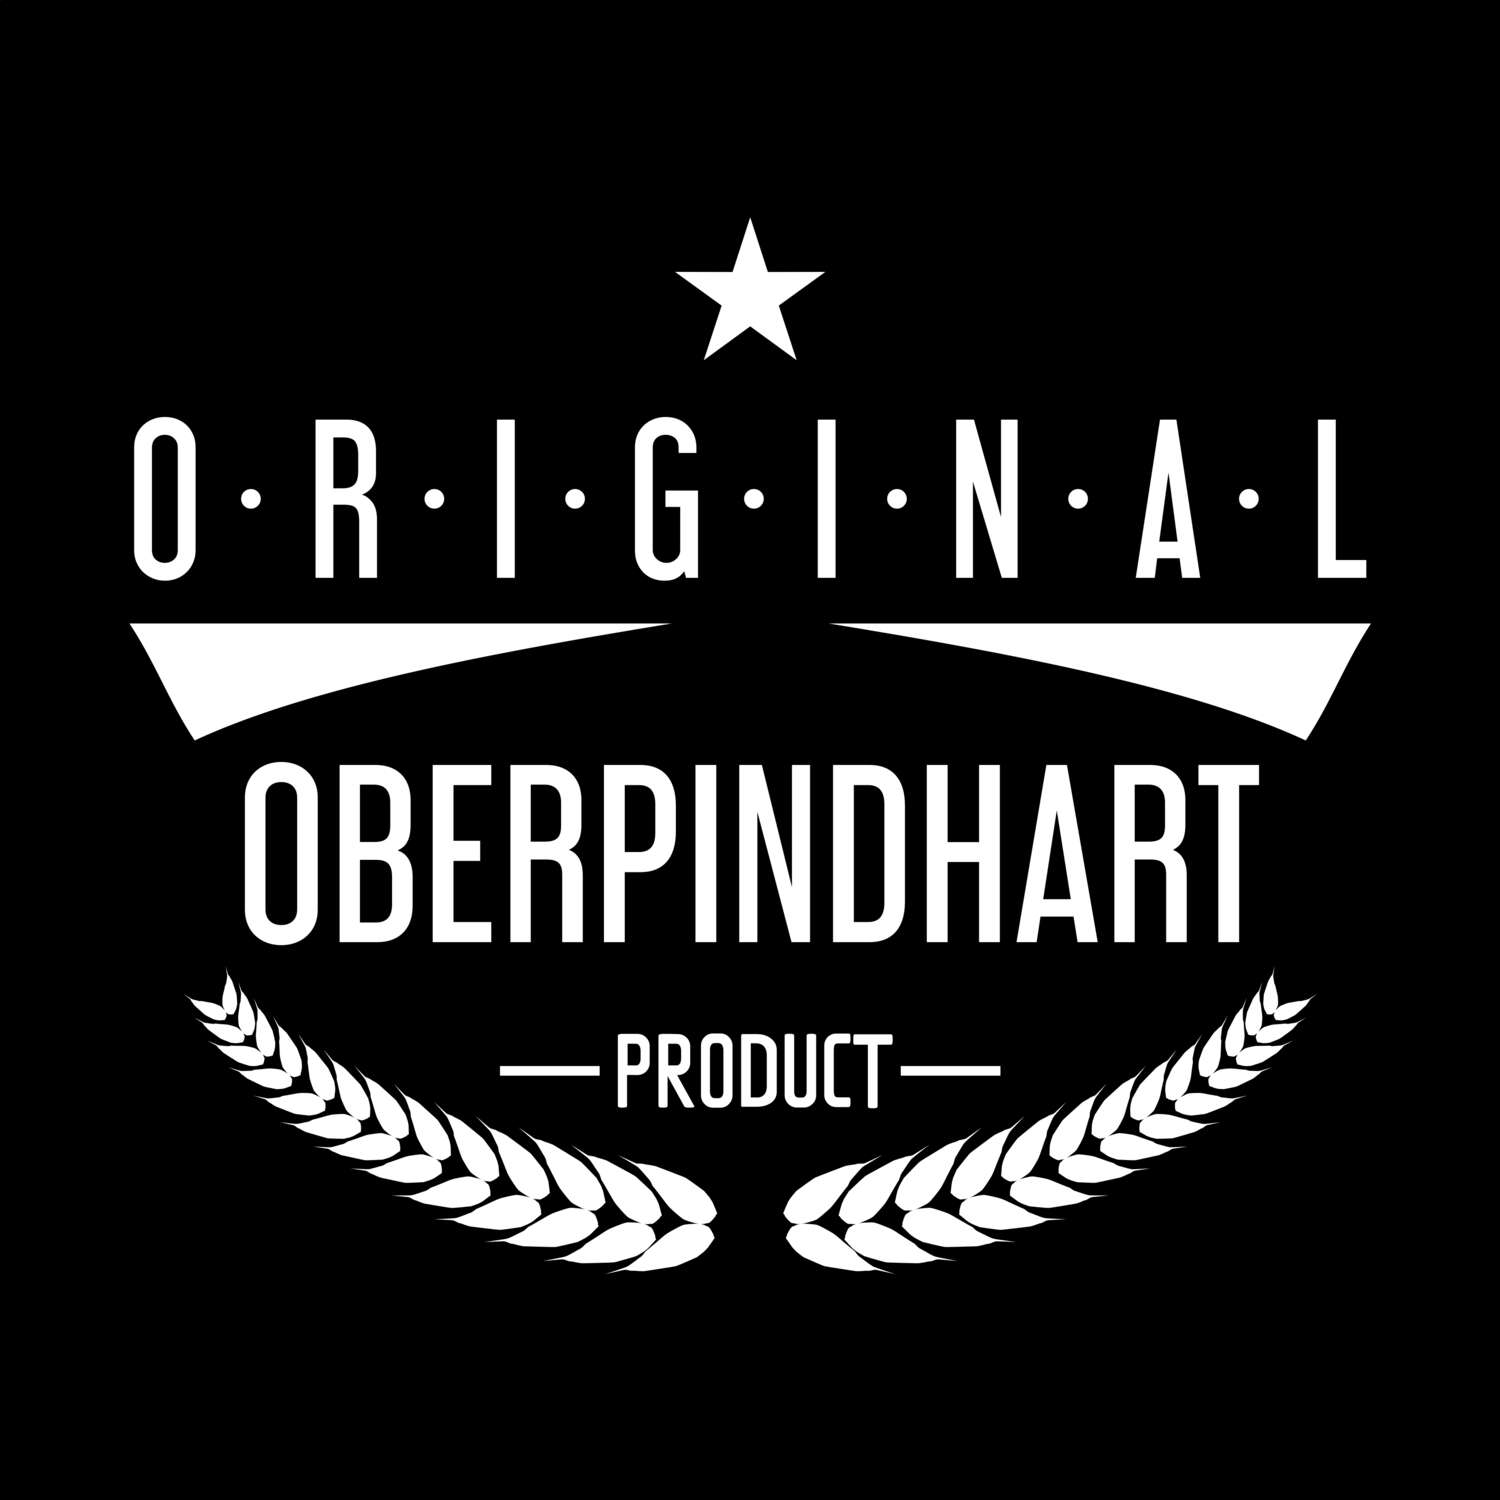 Oberpindhart T-Shirt »Original Product«